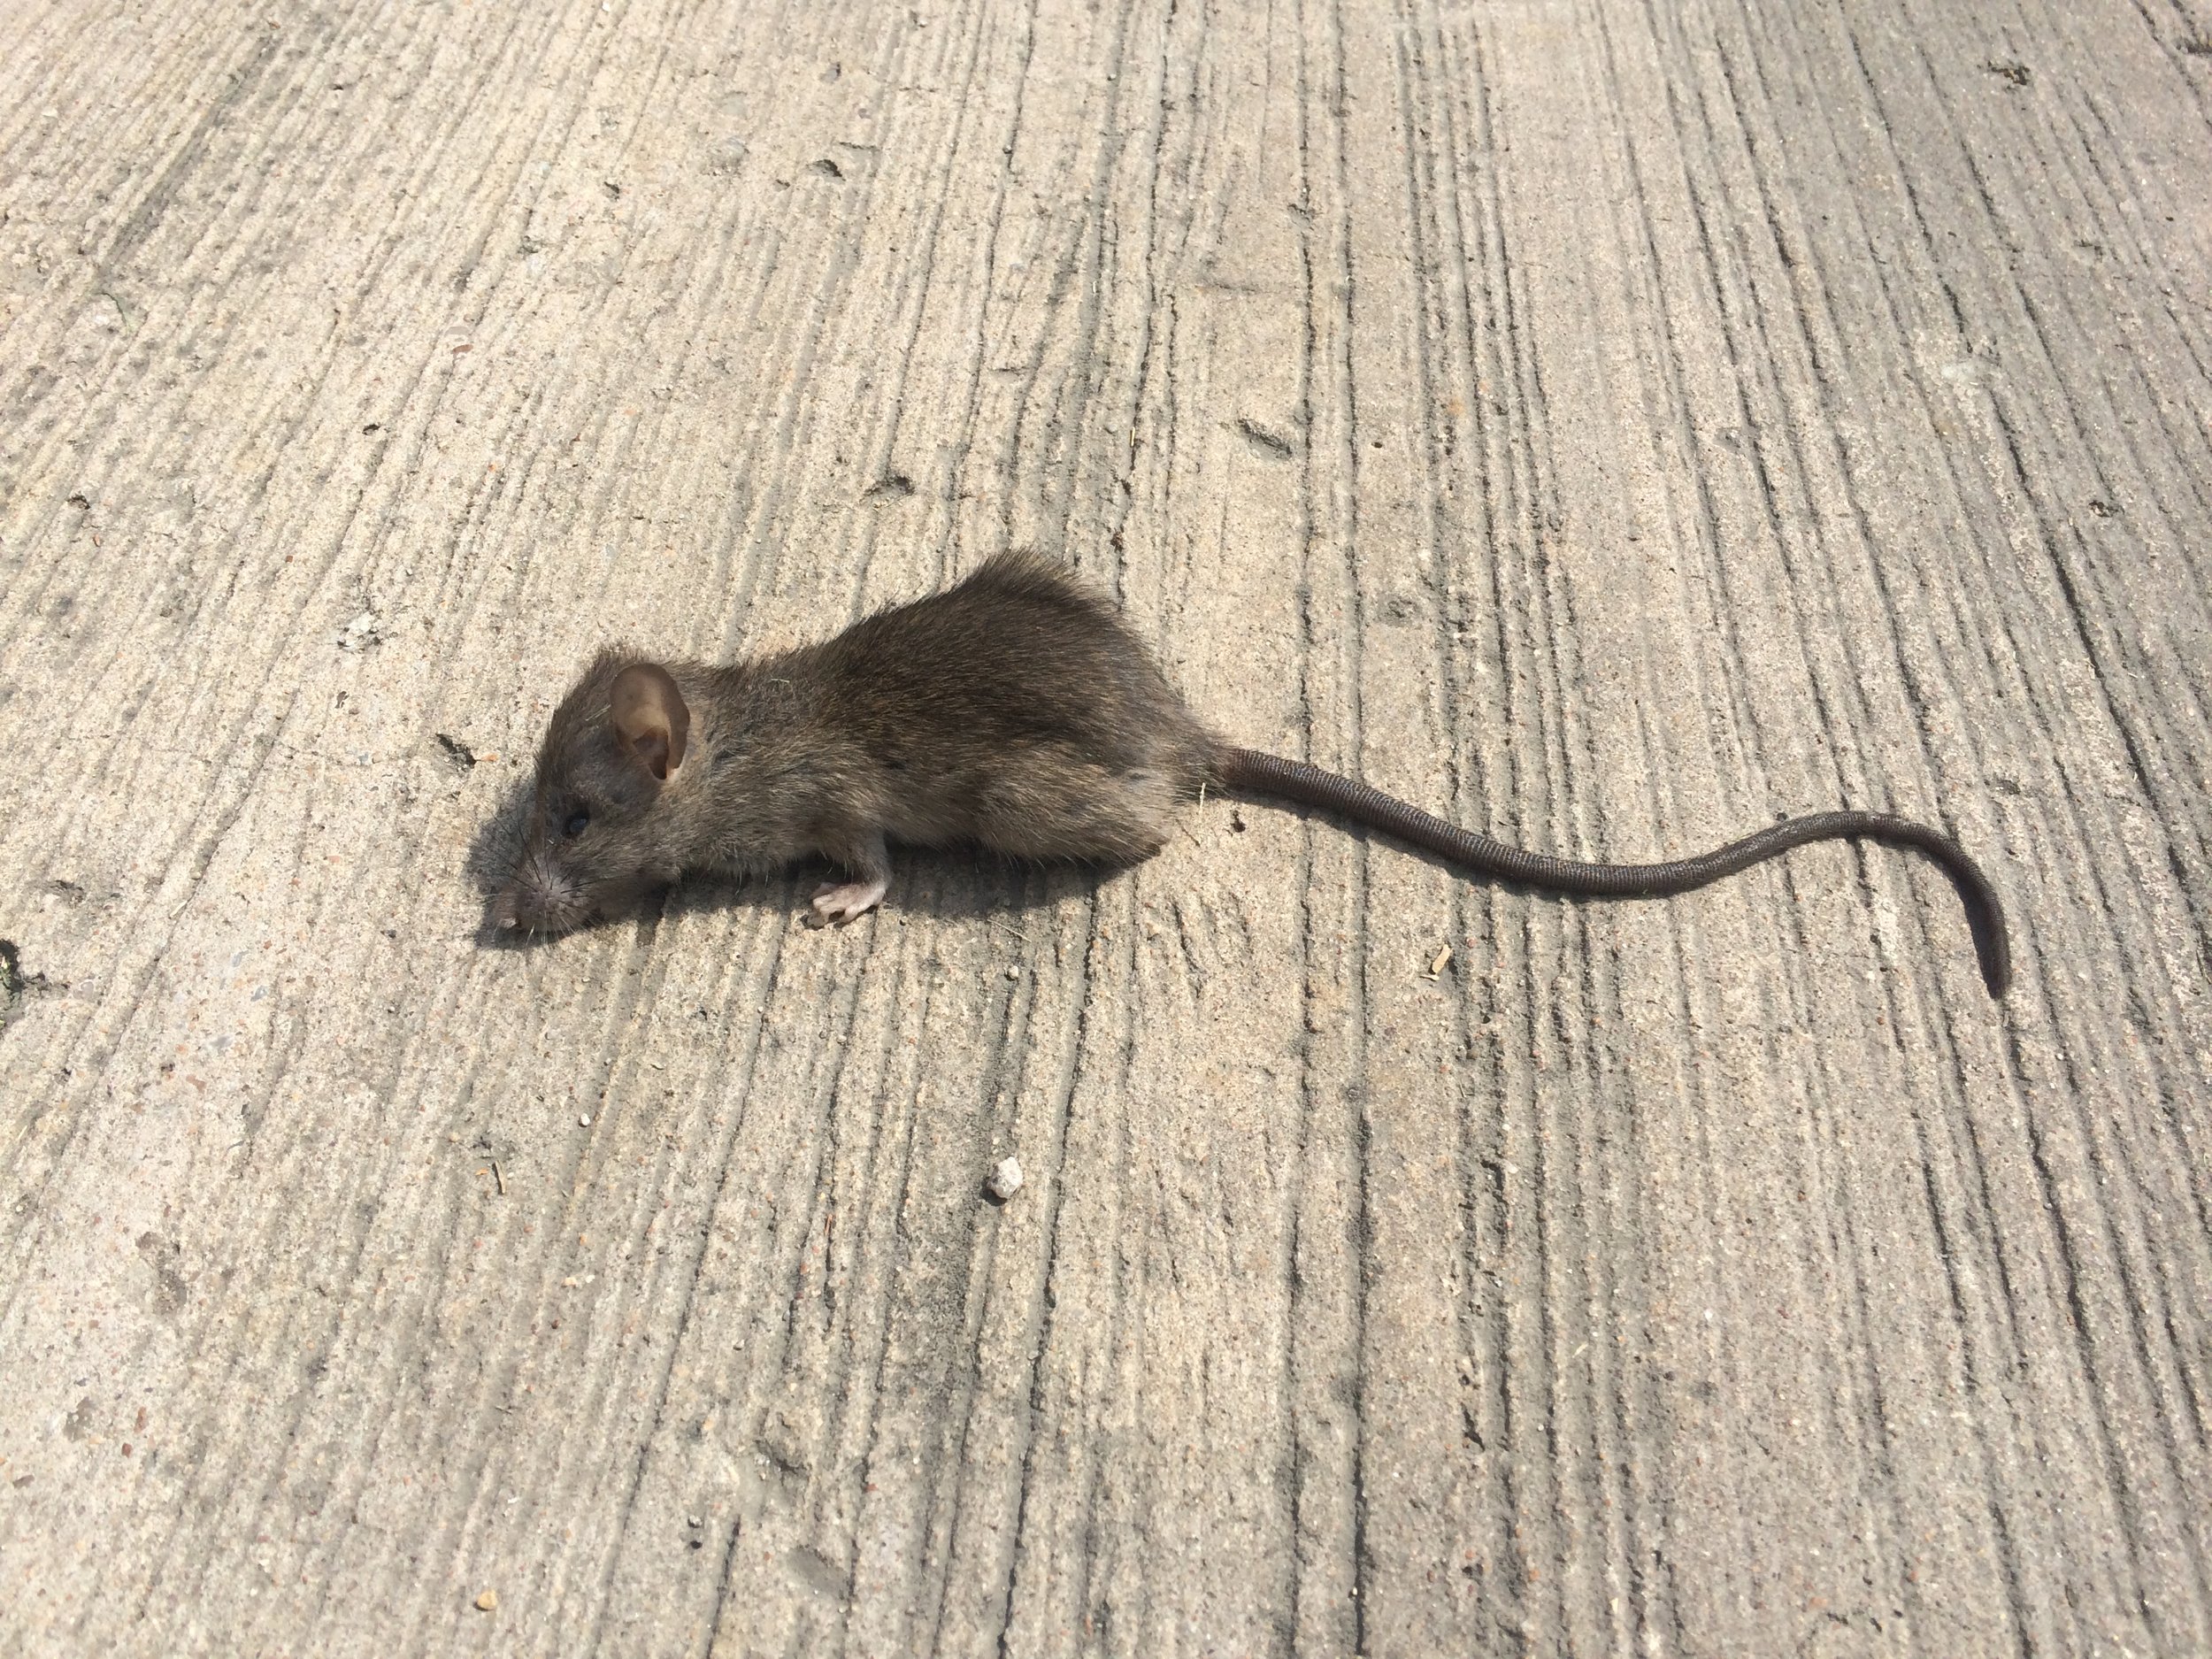 Mouse Traps Alone Won't Solve Your Mouse Problem